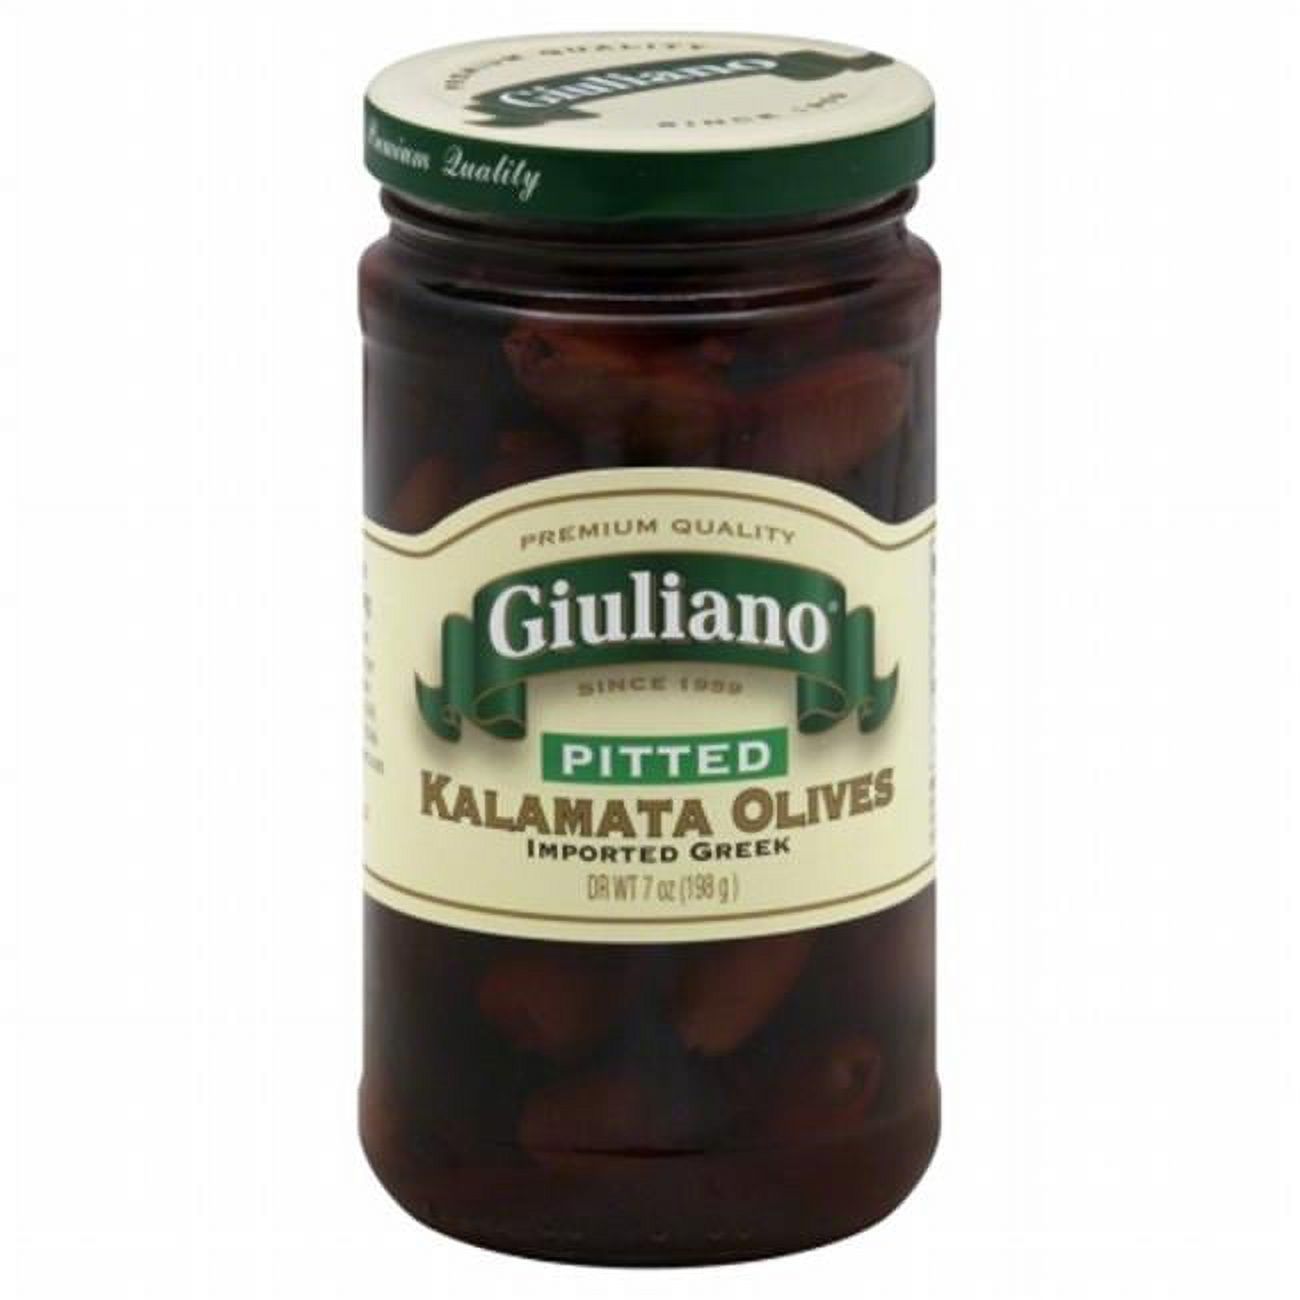 Giuliano: Pitted Kalamata Olives, 7 Oz - image 1 of 3